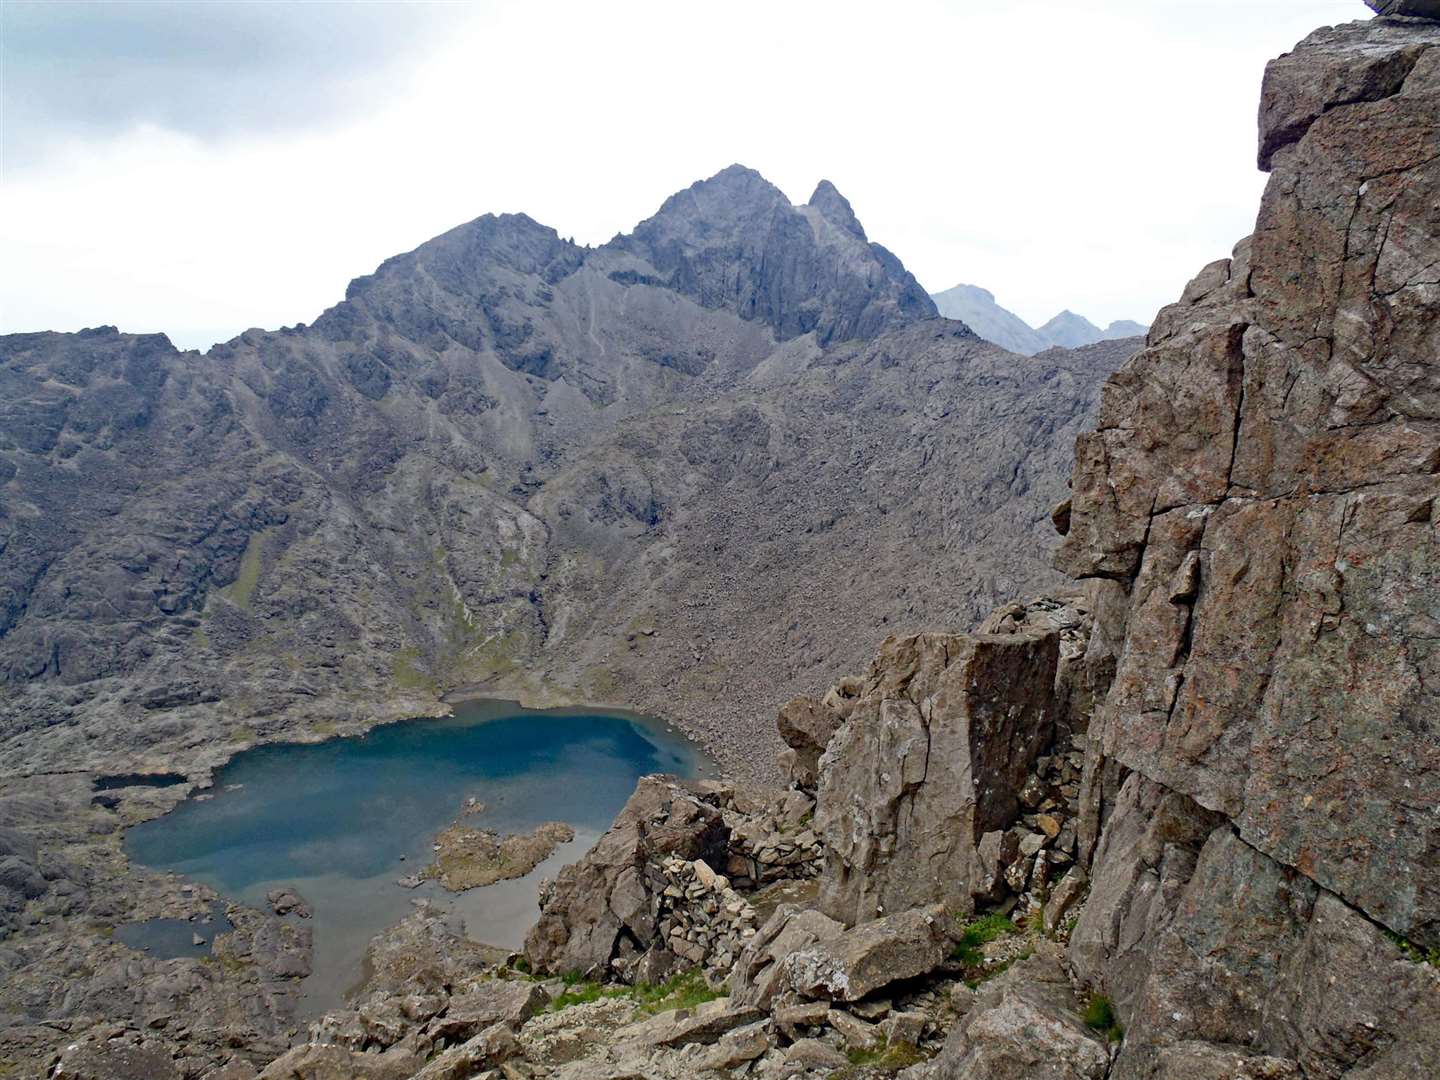 Sgurr Alasdair, the highest peak.